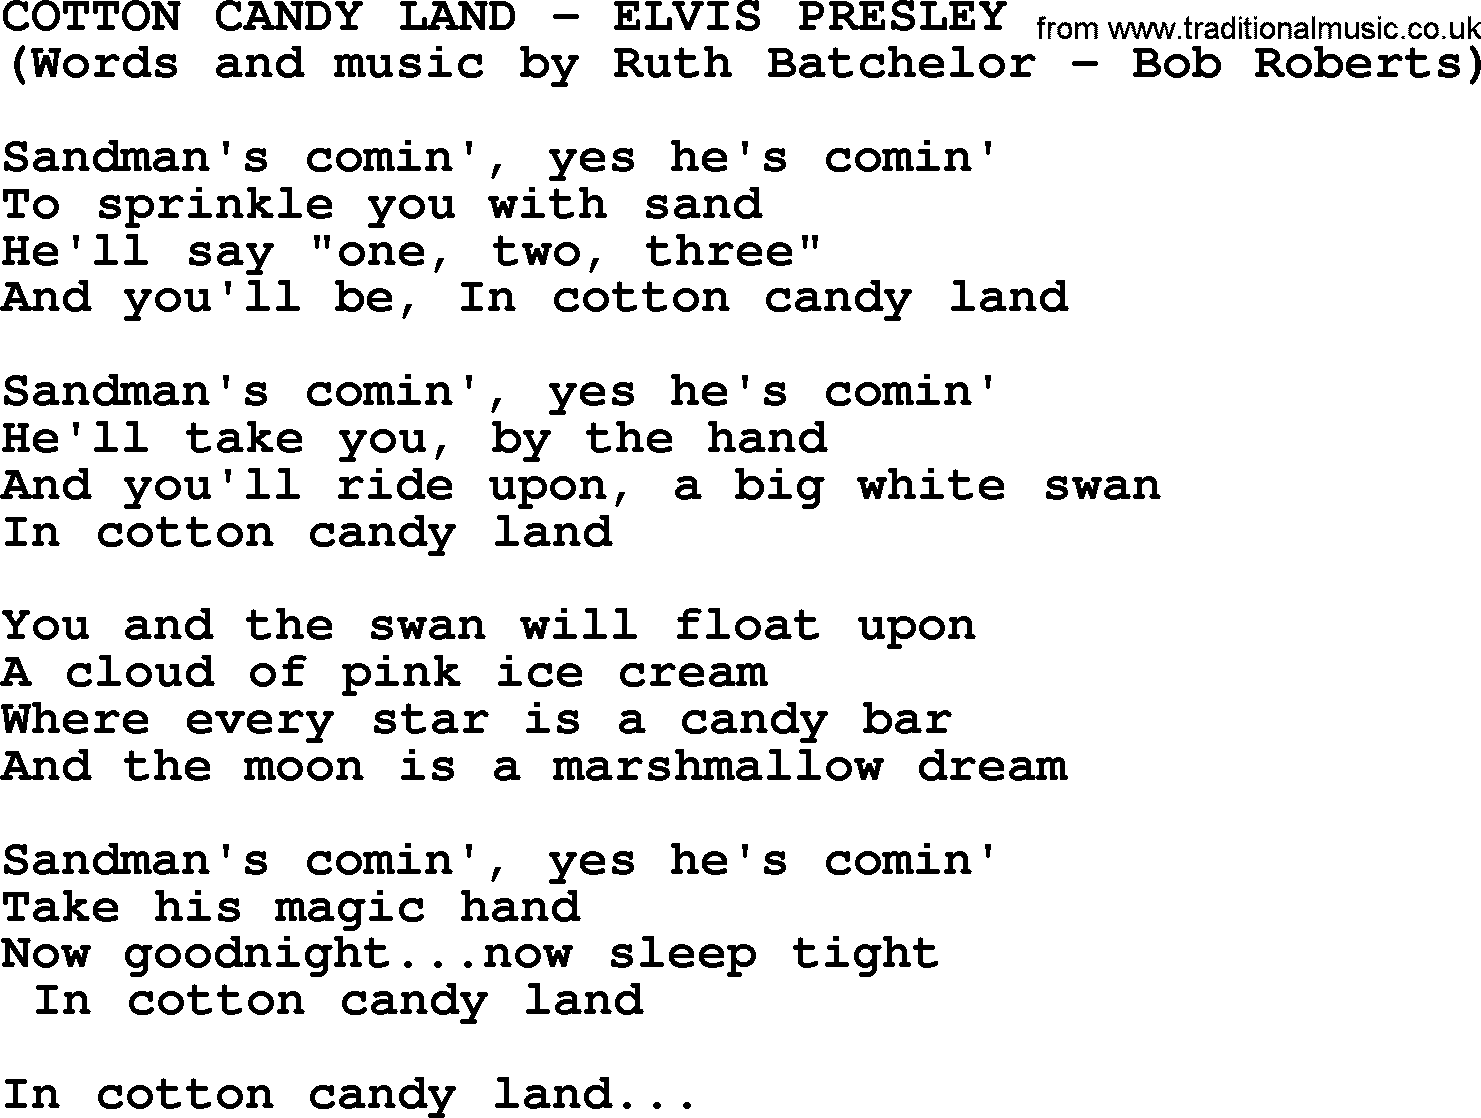 Cotton Candy Land By Elvis Presley Lyrics